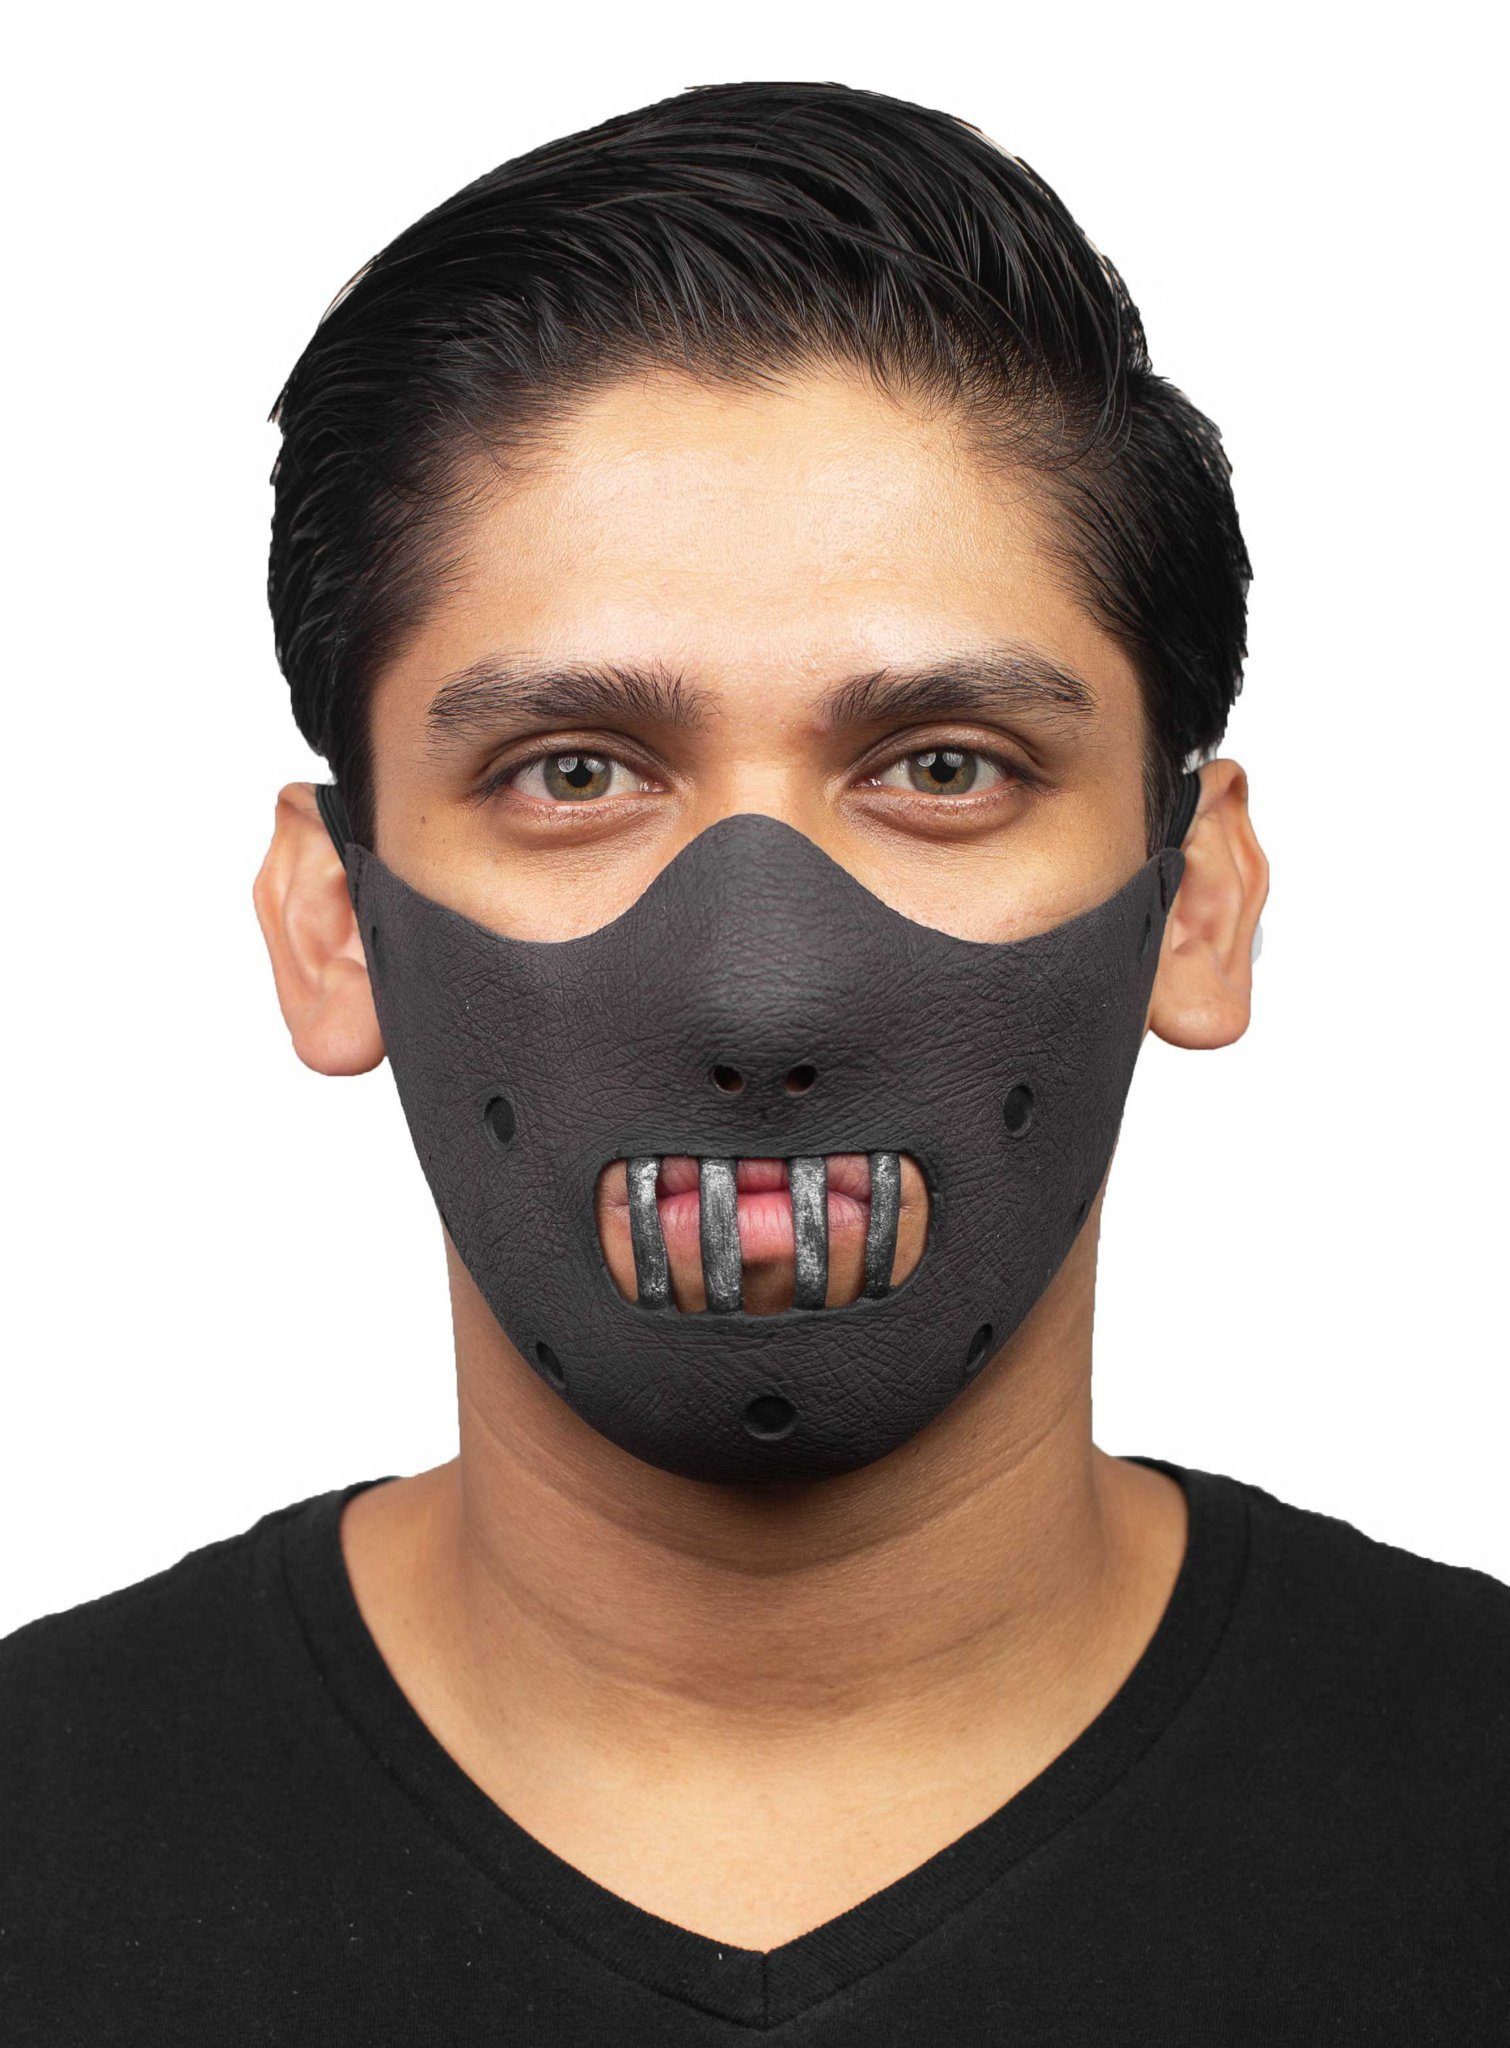 Metamorph Verkleidungsmaske Hannibal Maulkorb Maske, Diese Masken sorgen für großen Schrecken, auch wenn sie das Gesicht